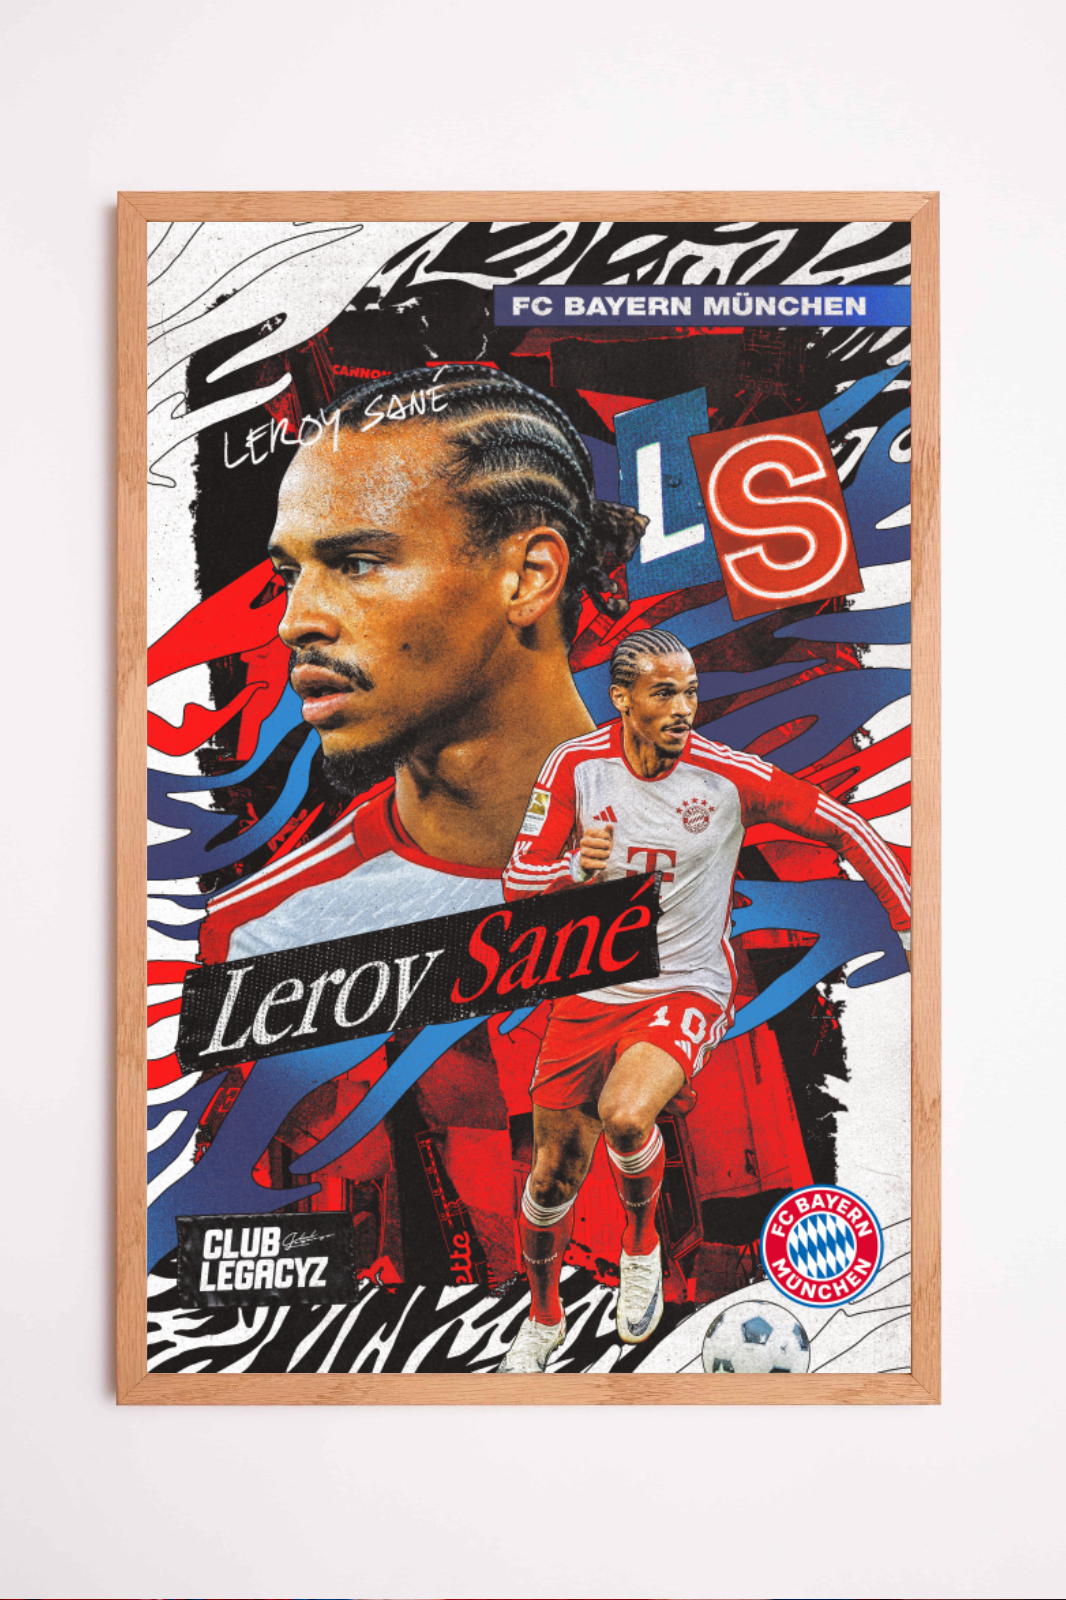 FC Bayern München - Leroy Sané Poster limited to 100